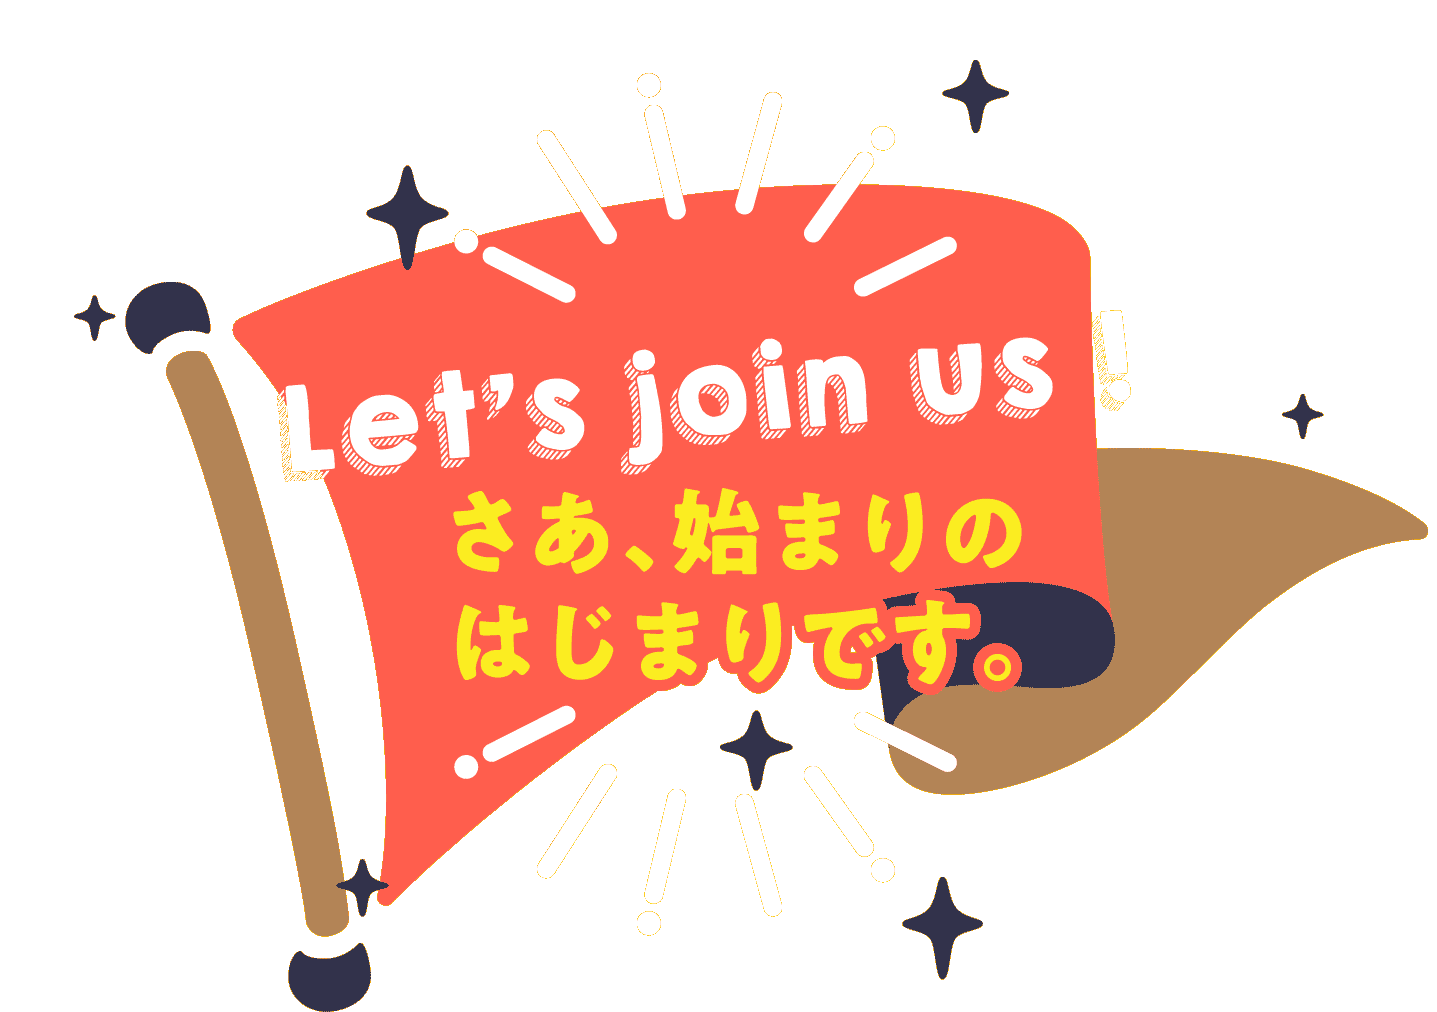 Let’s join us ! さあ、始まりのはじまりです。